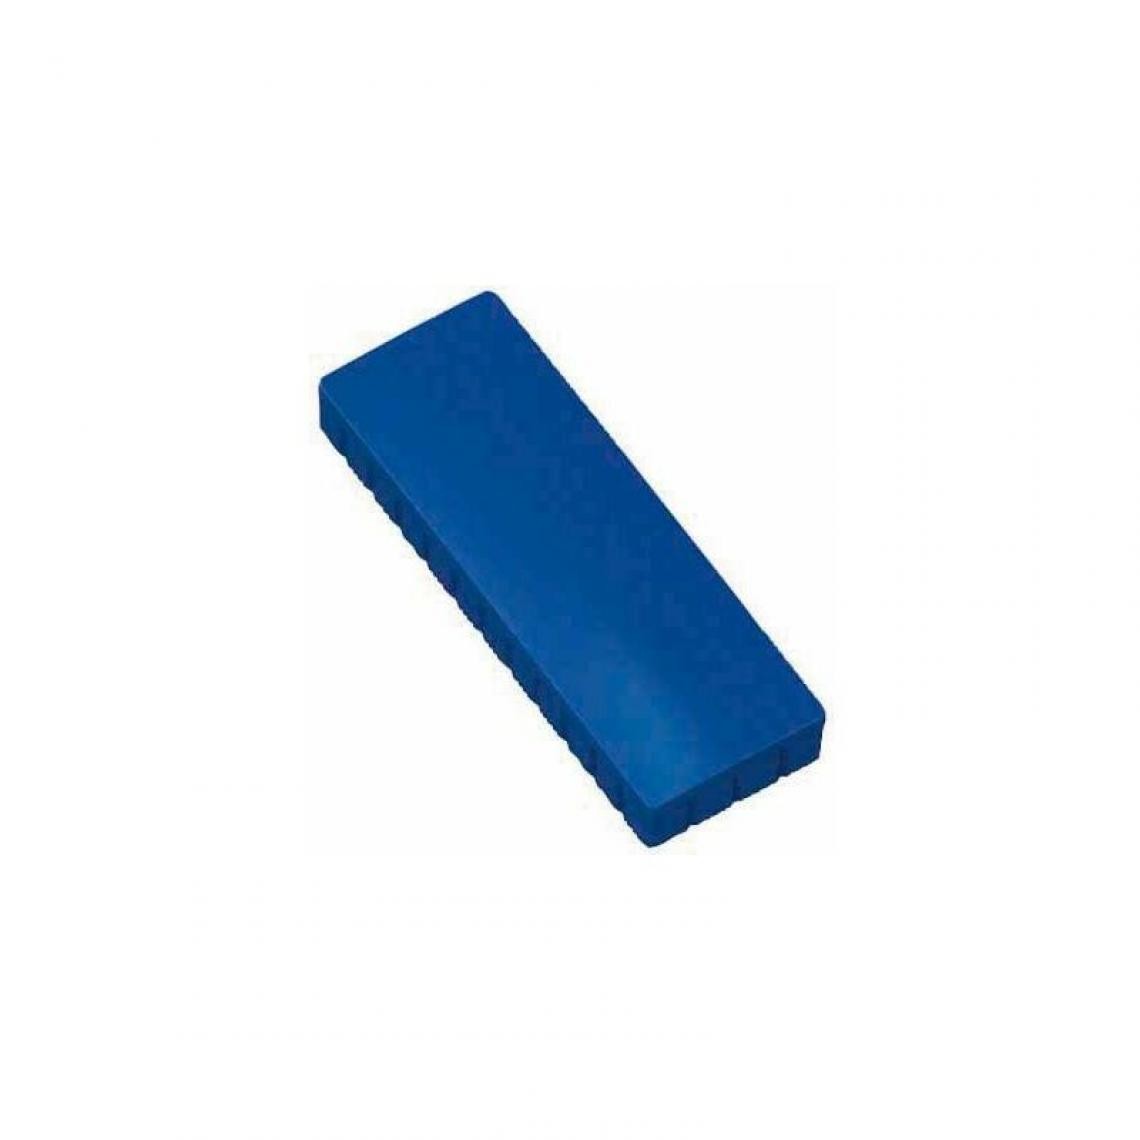 Maul - MAUL Aimant MAULsolide, capacité de charge: 1 kg, bleu () - Visserie